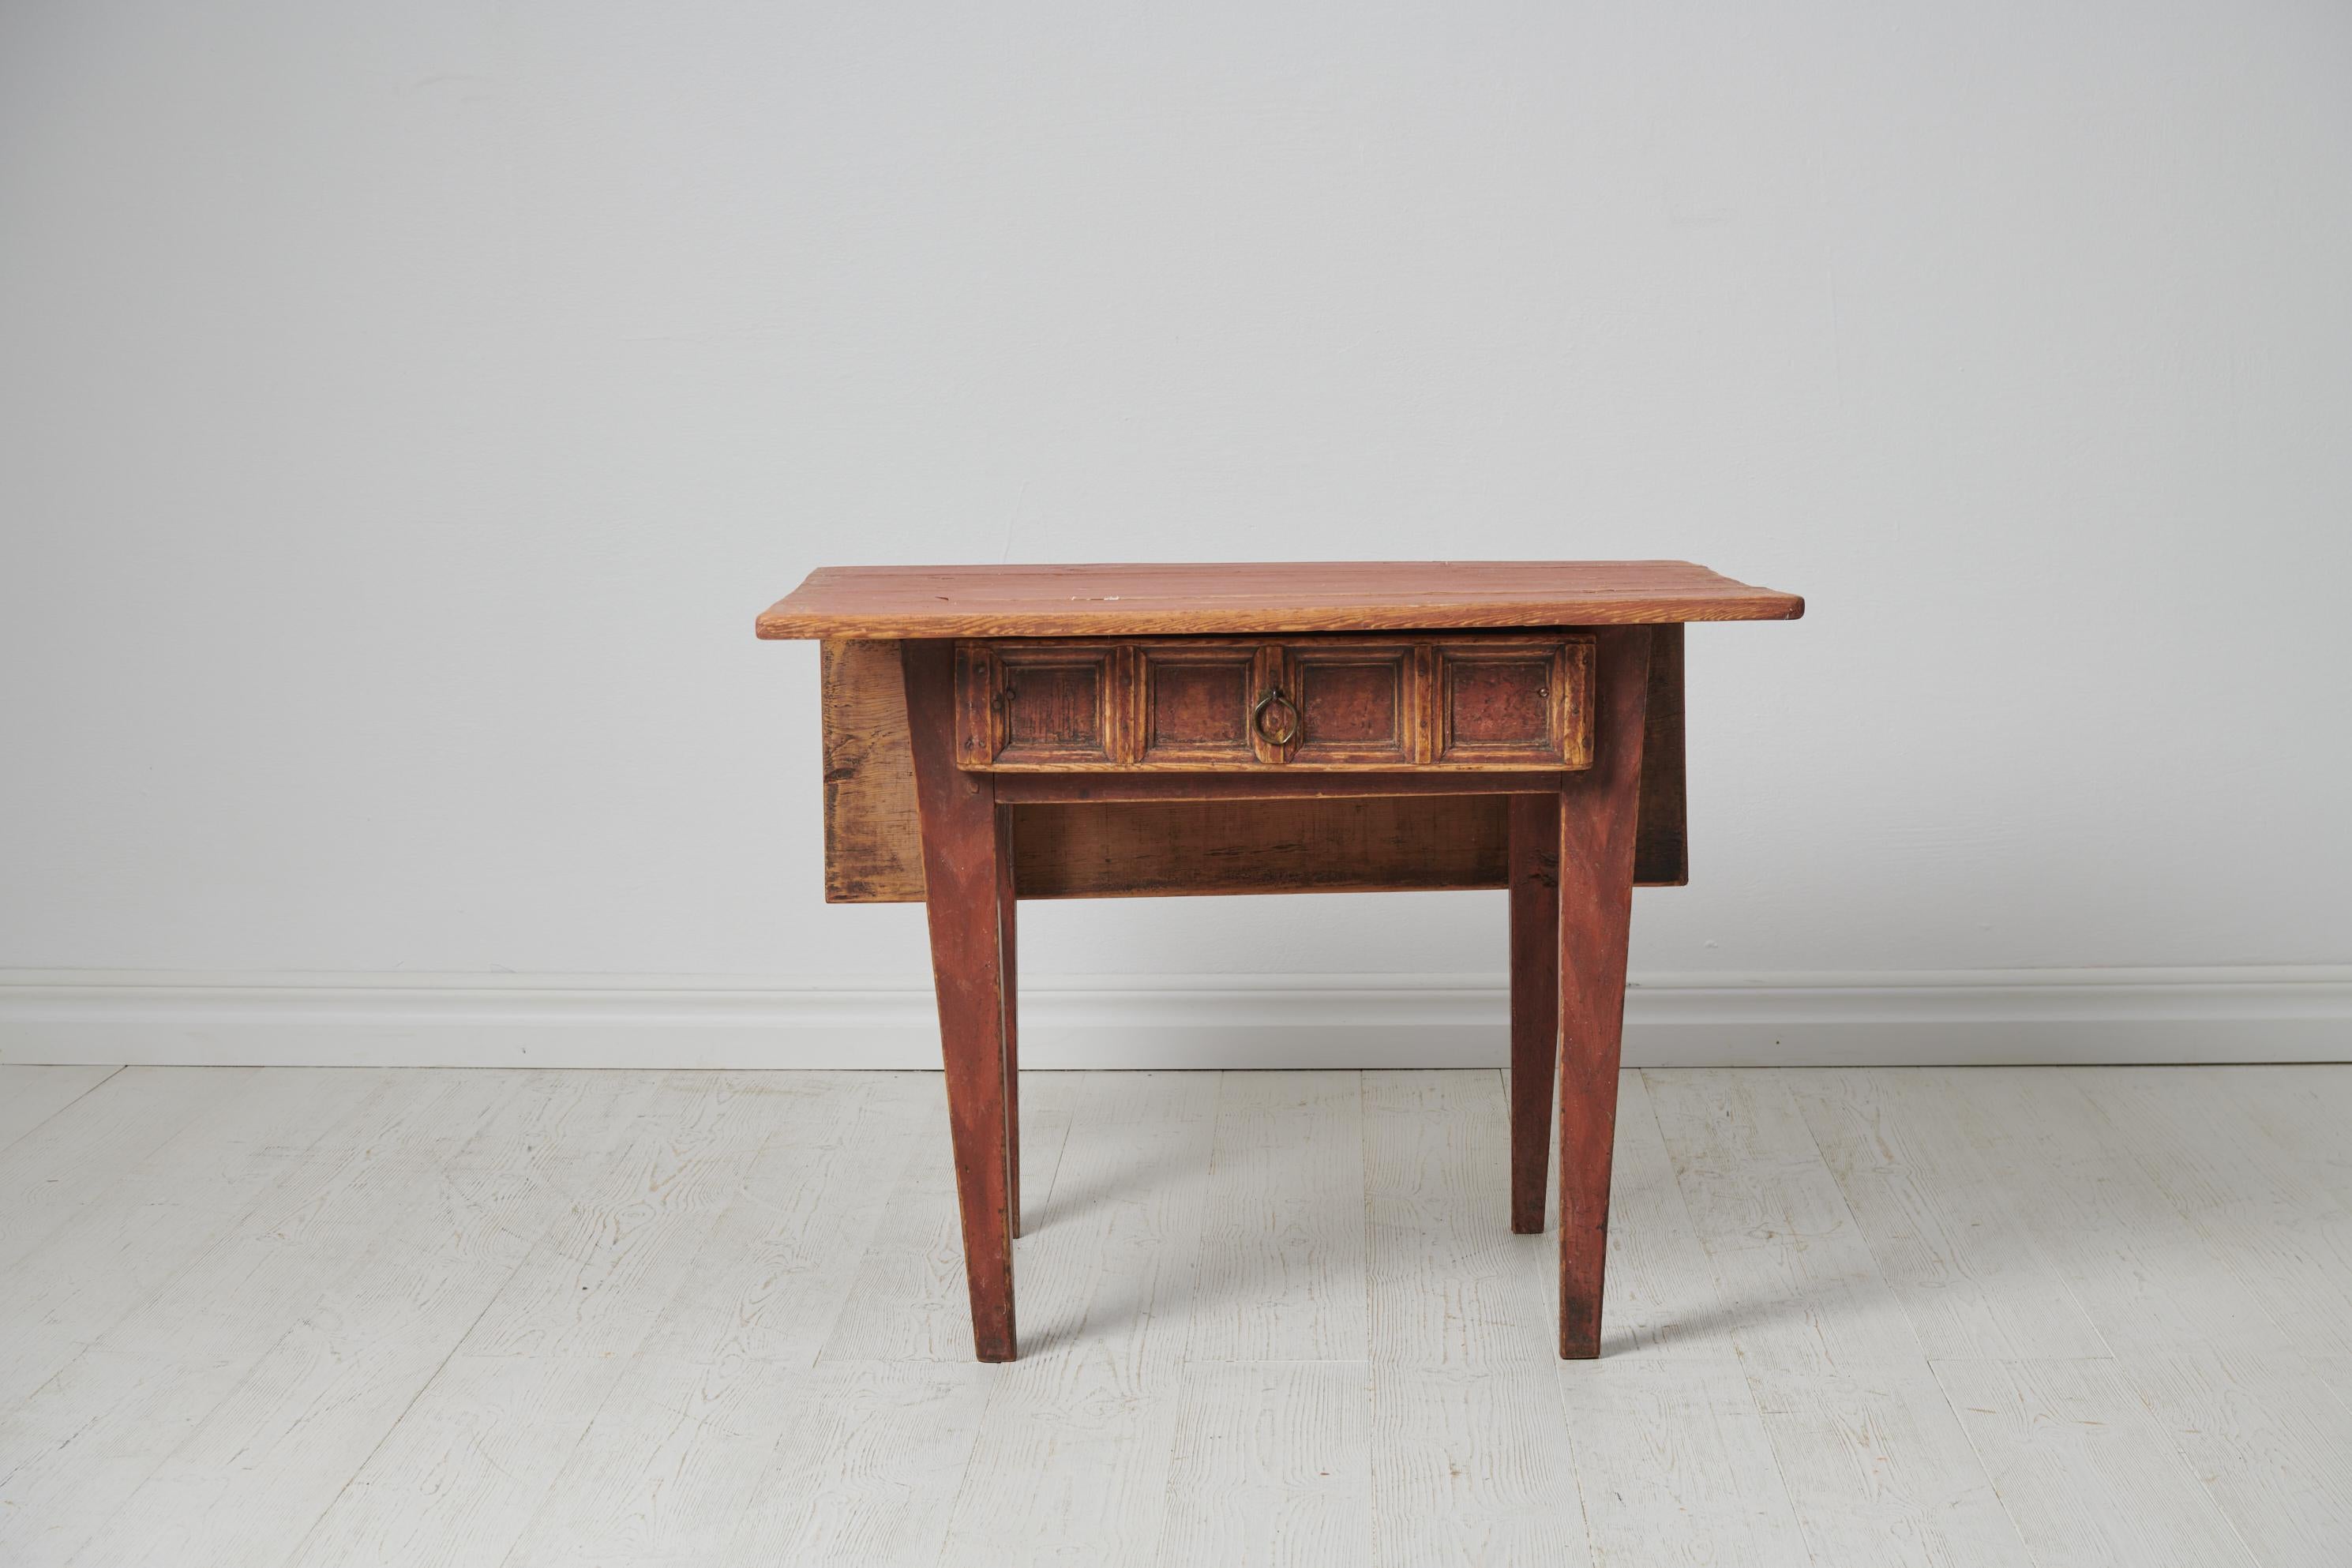 Kleiner charmanter Landhaustisch aus Nordschweden. Der Tisch ist ein echtes Volkskunstmöbel aus der Zeit um 1790 bis 1810. Er wird in Handarbeit aus massivem Kiefernholz hergestellt. Der Tisch ist in unberührtem Zustand mit der ursprünglichen Farbe,